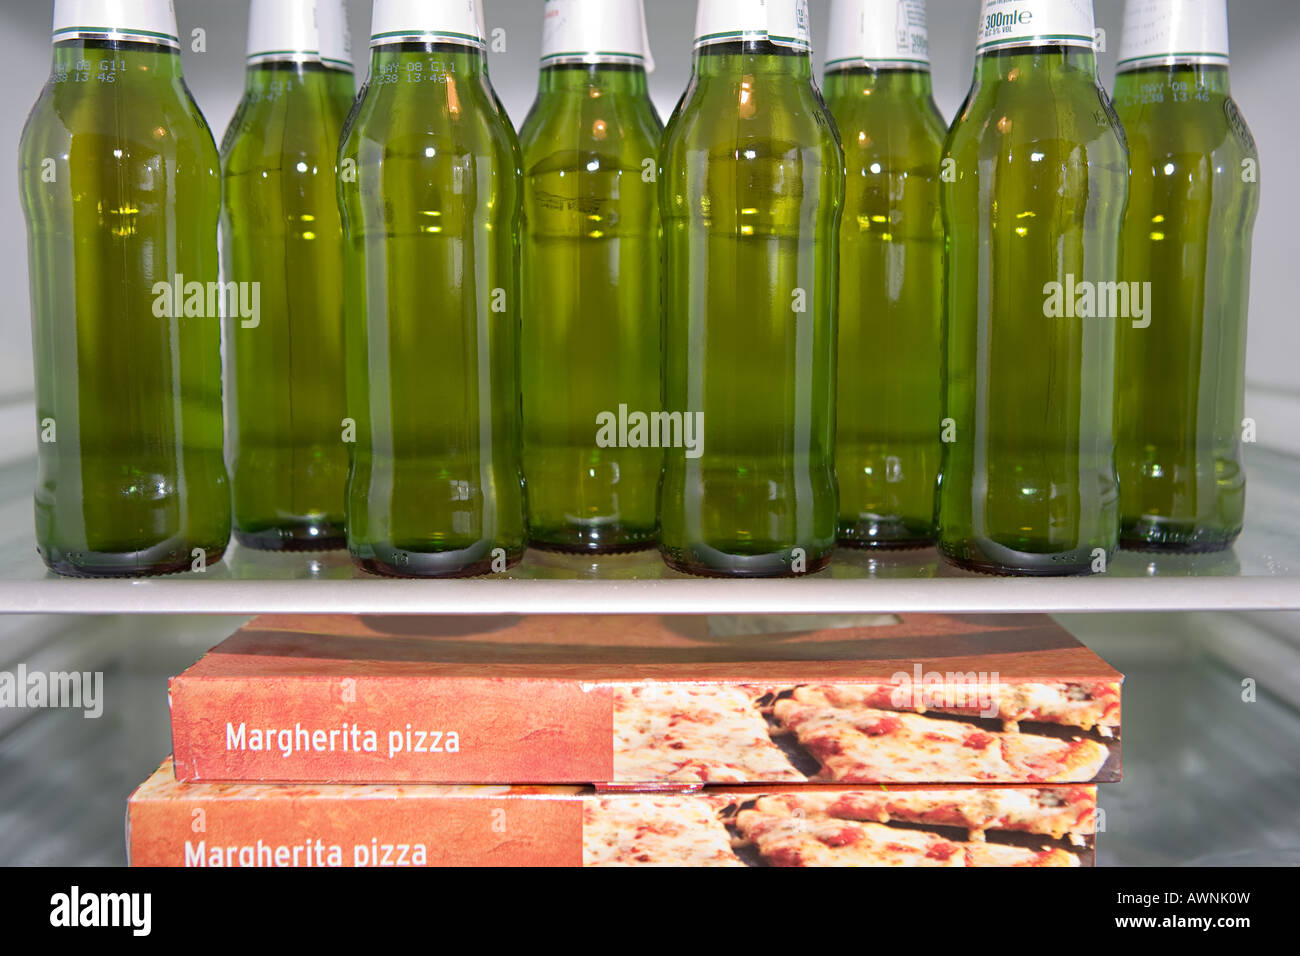 Bouteilles de bière et de pizza dans un réfrigérateur Banque D'Images